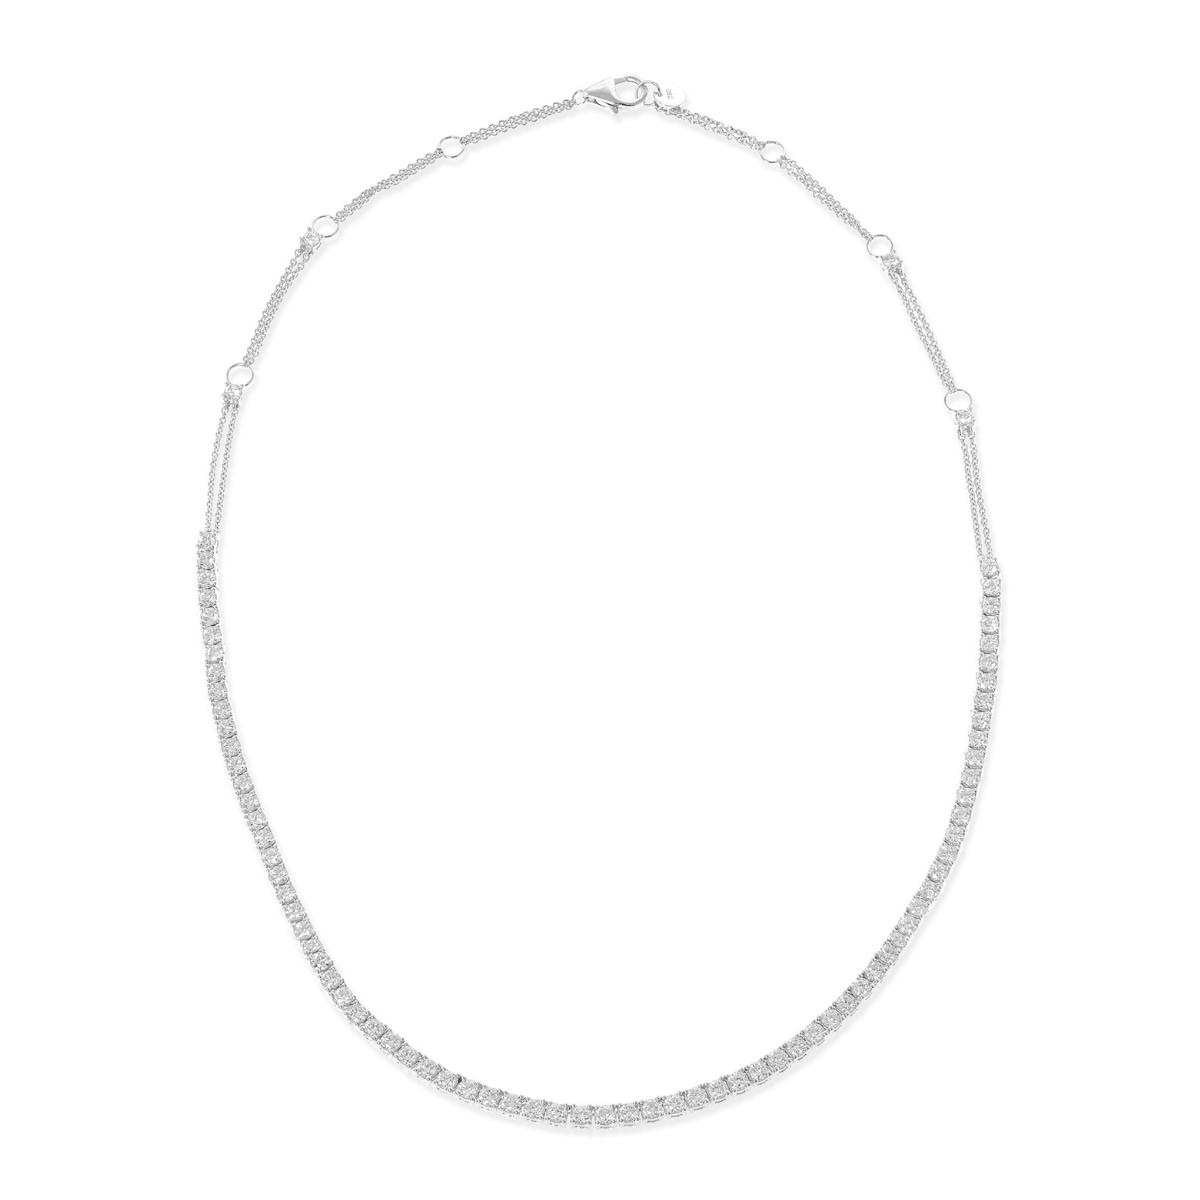 RIVIERA Diamond tennis necklace 5.5ct